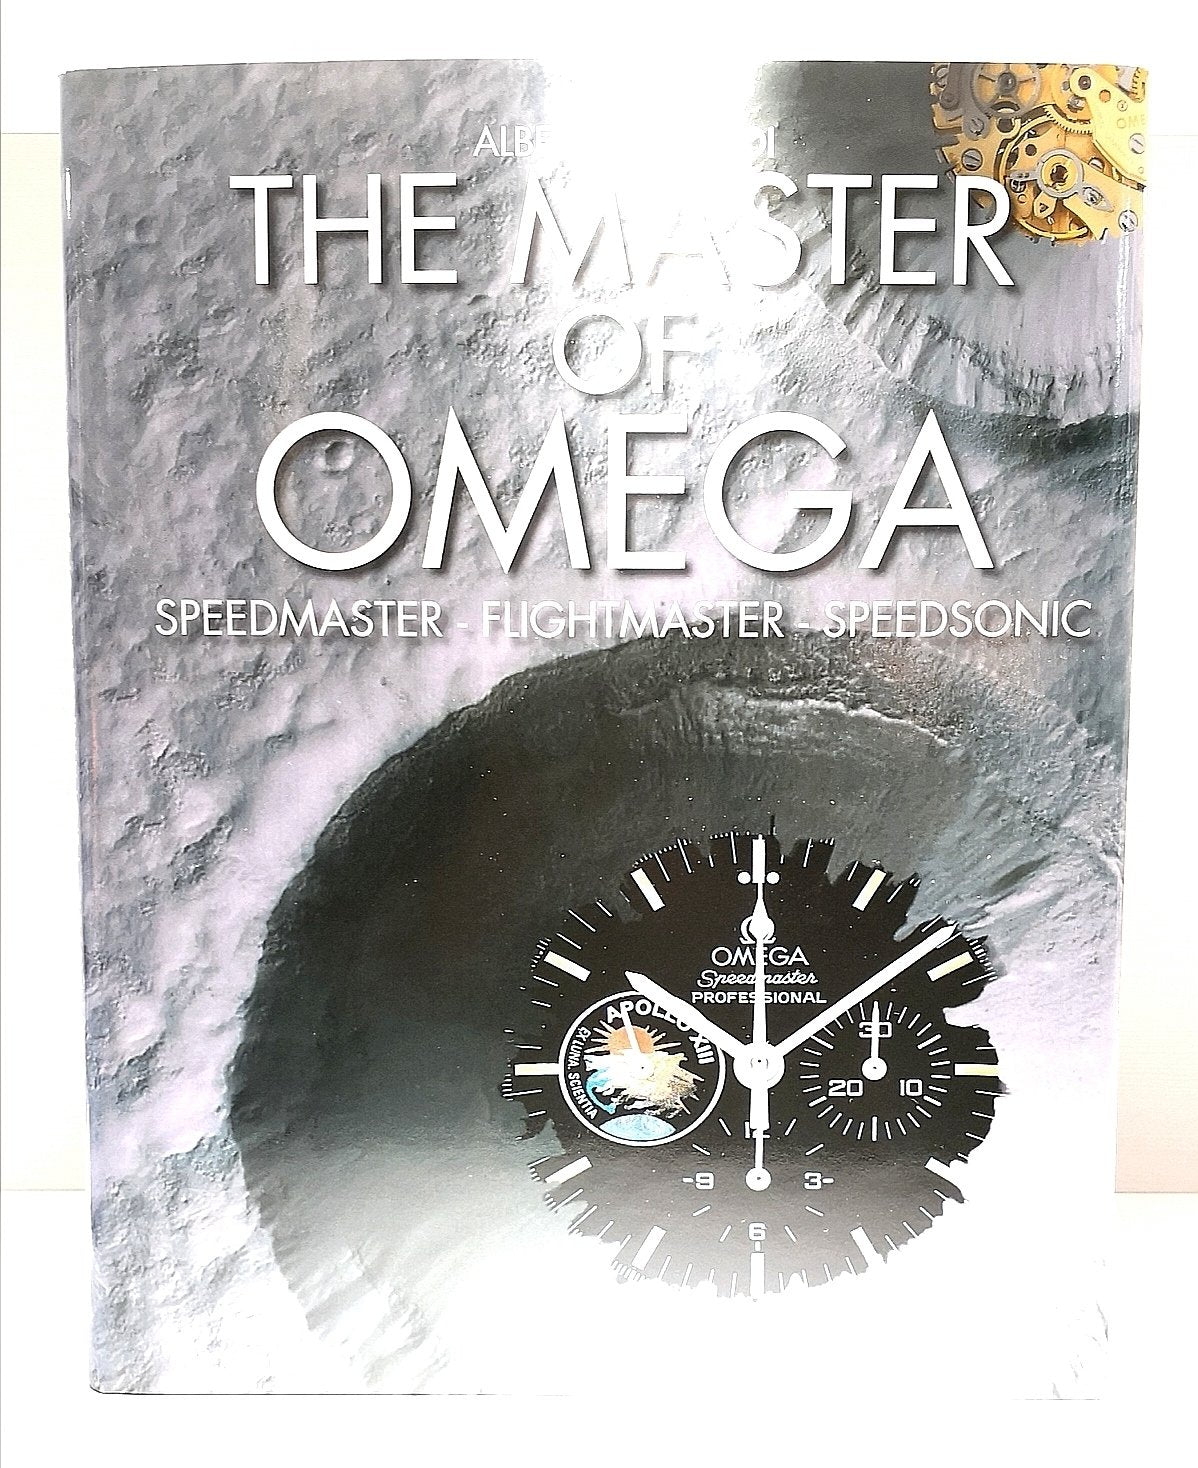 The Master of Omega - GTIME editori - Alberto Isnardi